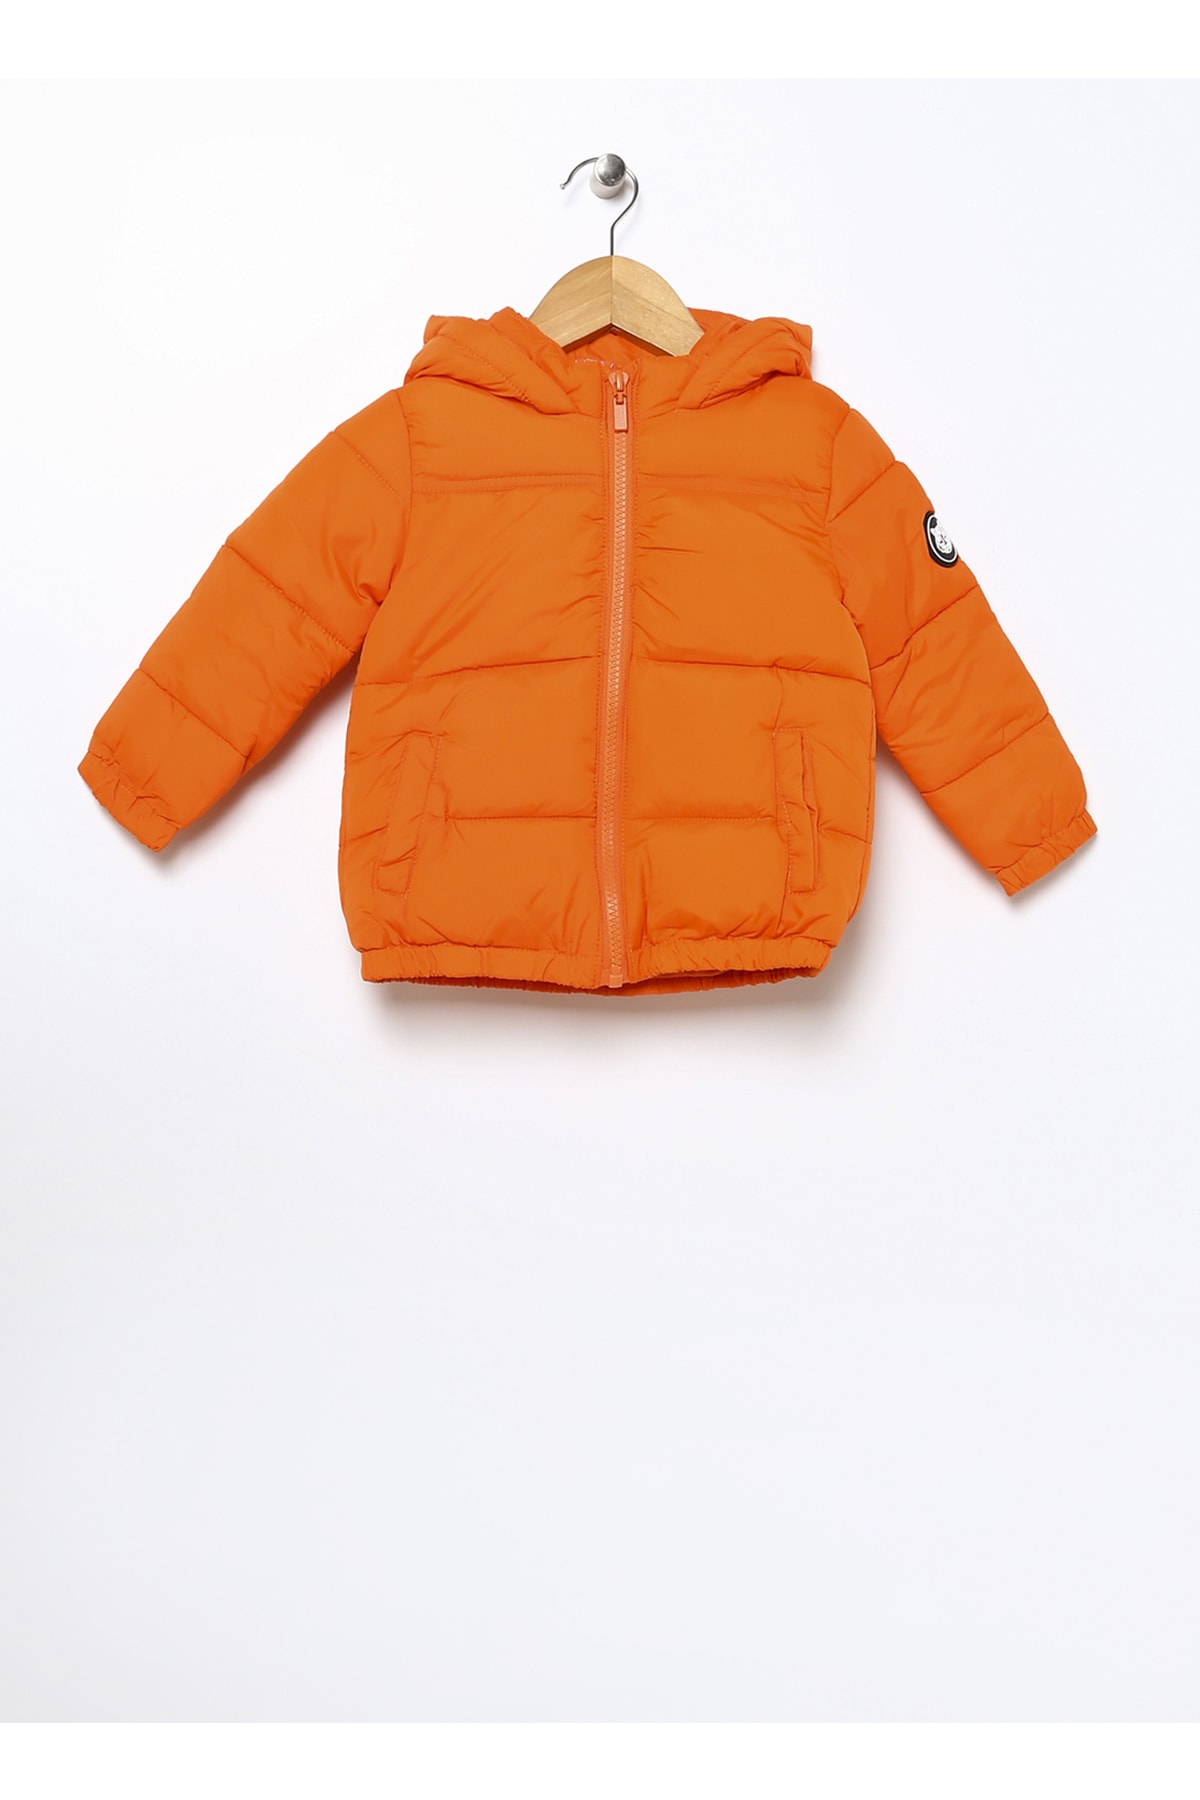 Levně Koton Baby Orange Coat 3wmb20011tw